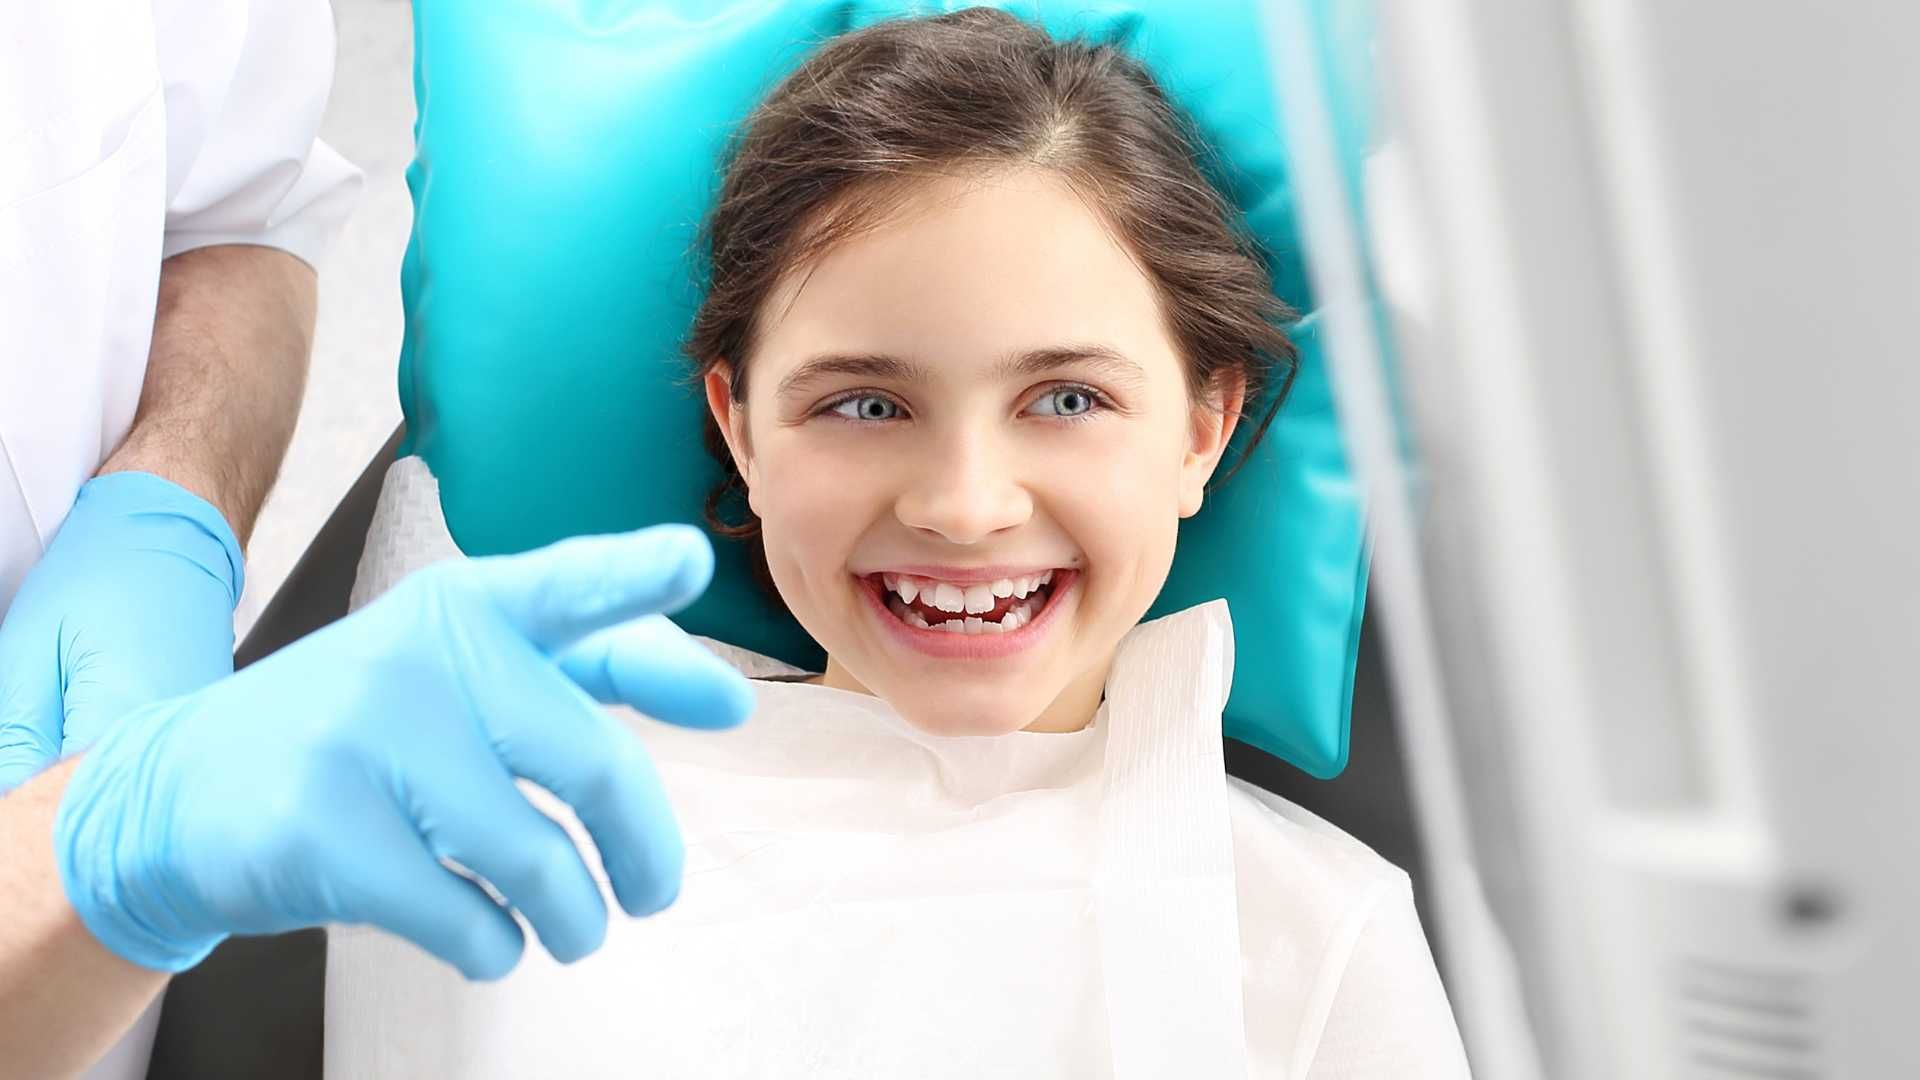 فیشور سیلانت (شیار پوشی) کودکان با مواد فلو سرامیک هر دندان دکتر علی ناصح اعلم در کرج 1